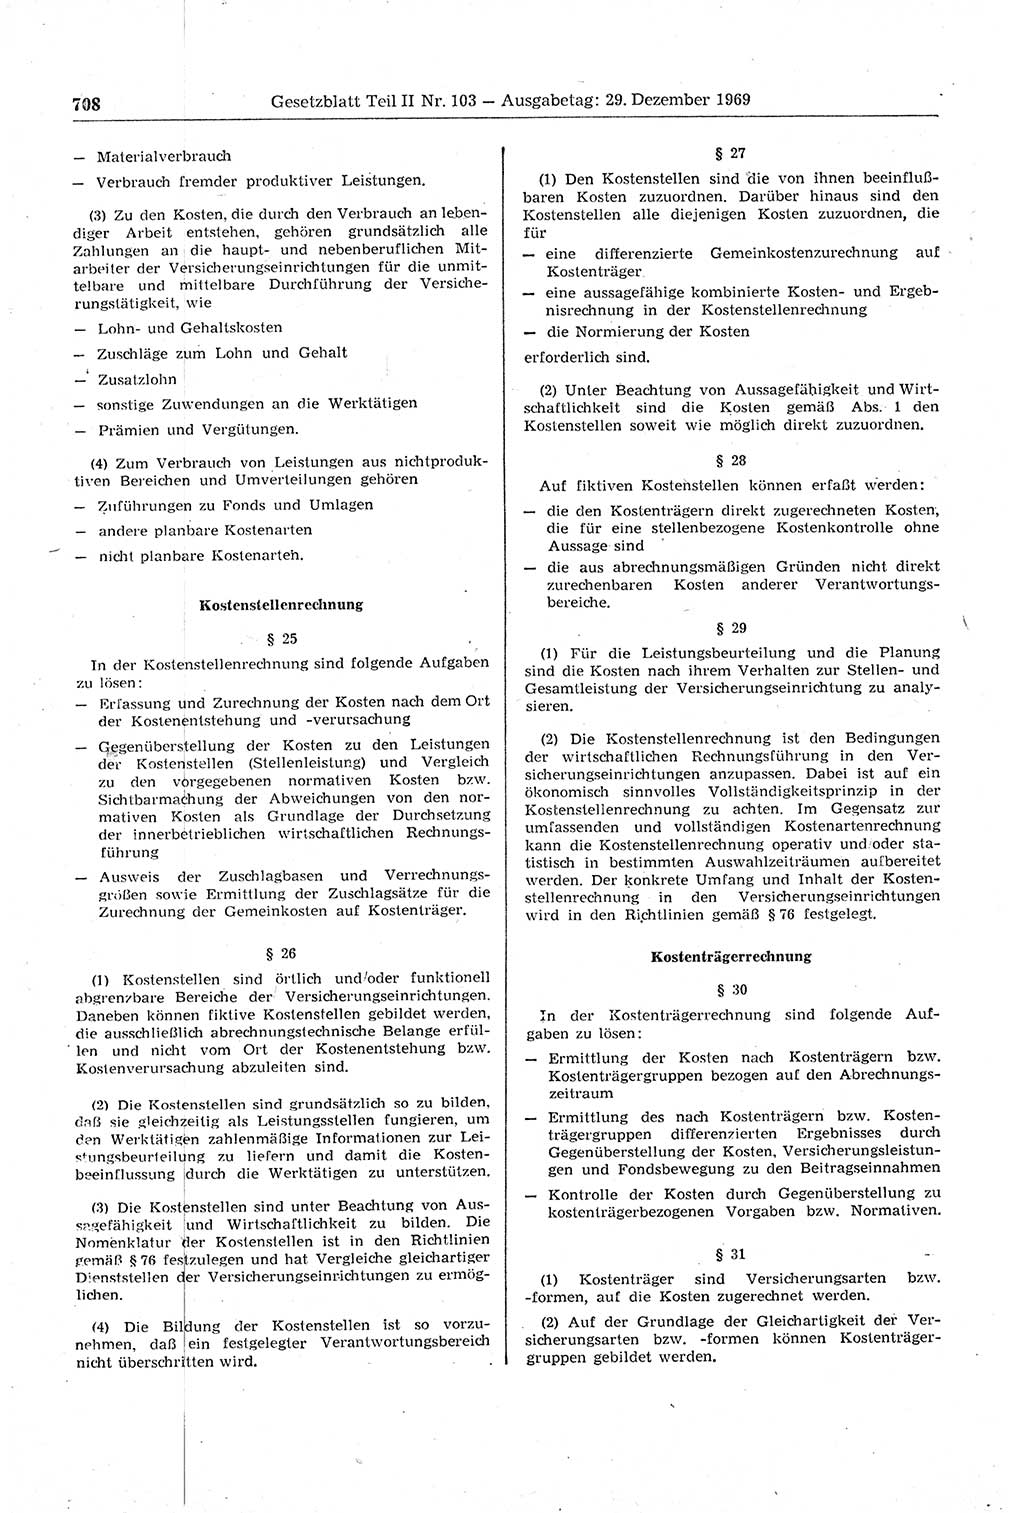 Gesetzblatt (GBl.) der Deutschen Demokratischen Republik (DDR) Teil ⅠⅠ 1969, Seite 708 (GBl. DDR ⅠⅠ 1969, S. 708)